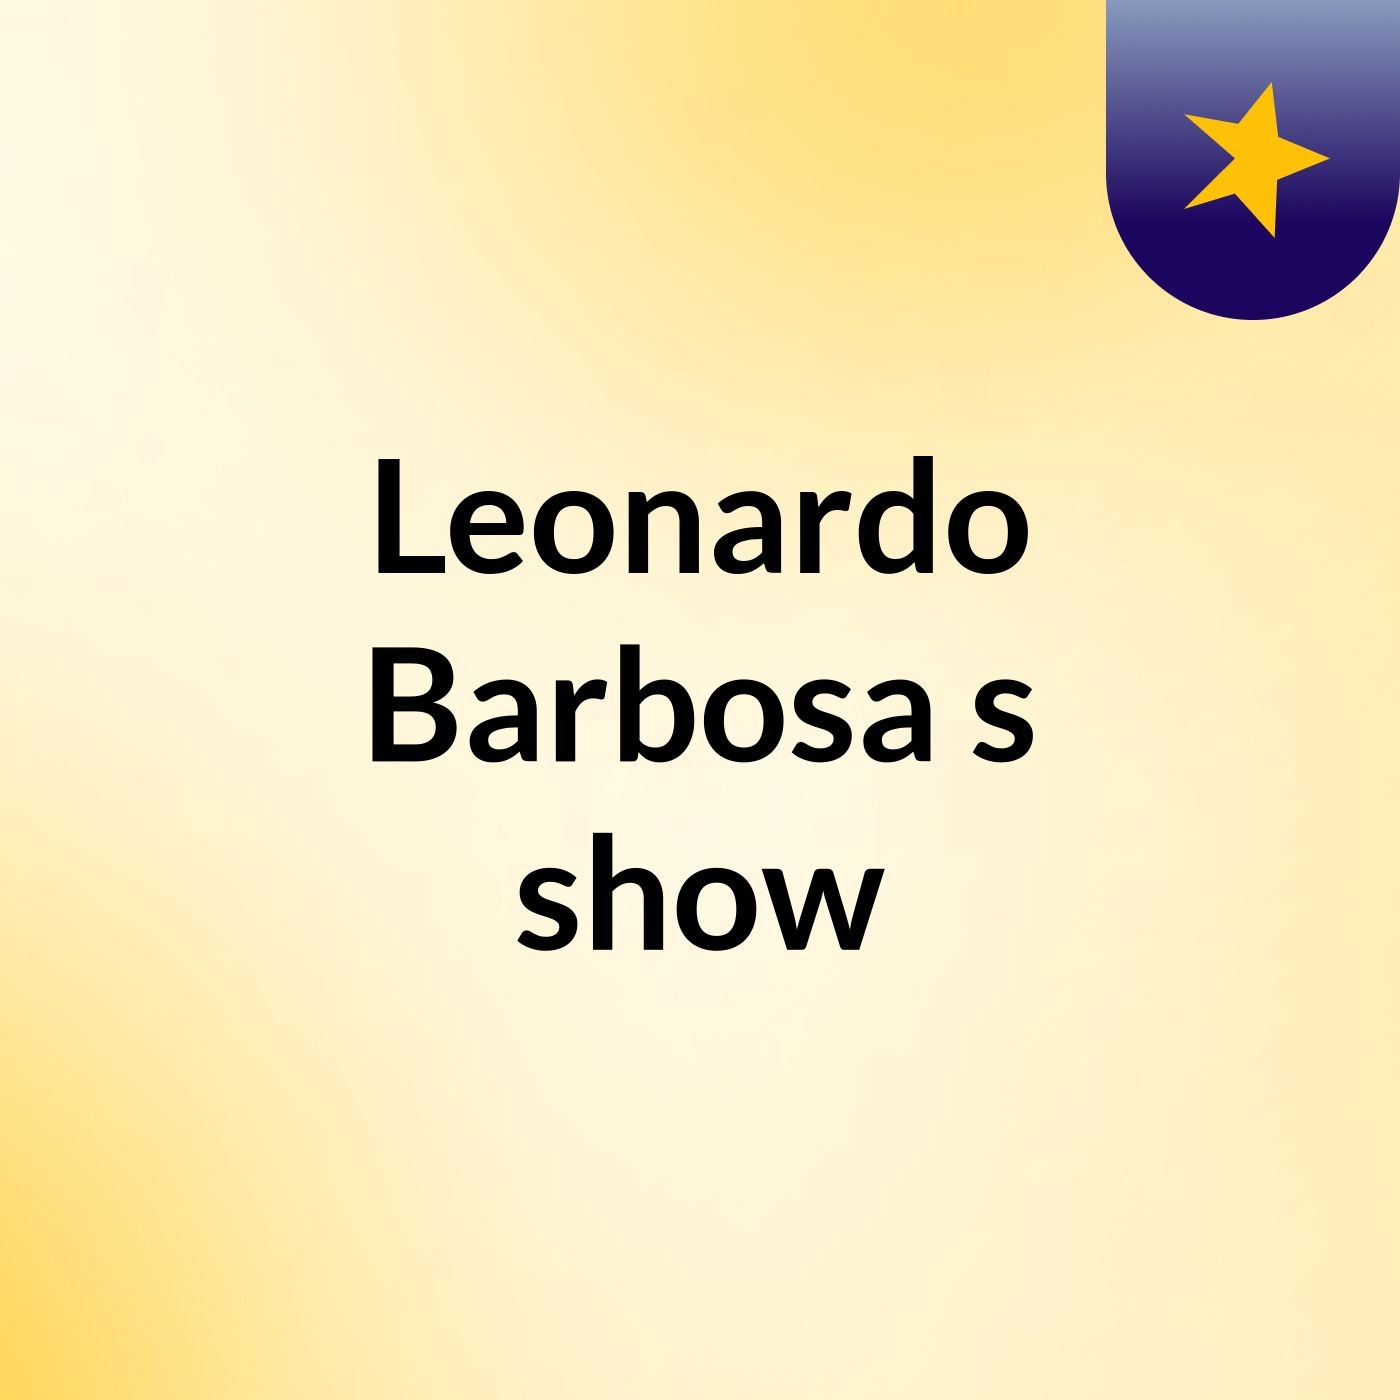 Leonardo Barbosa's show